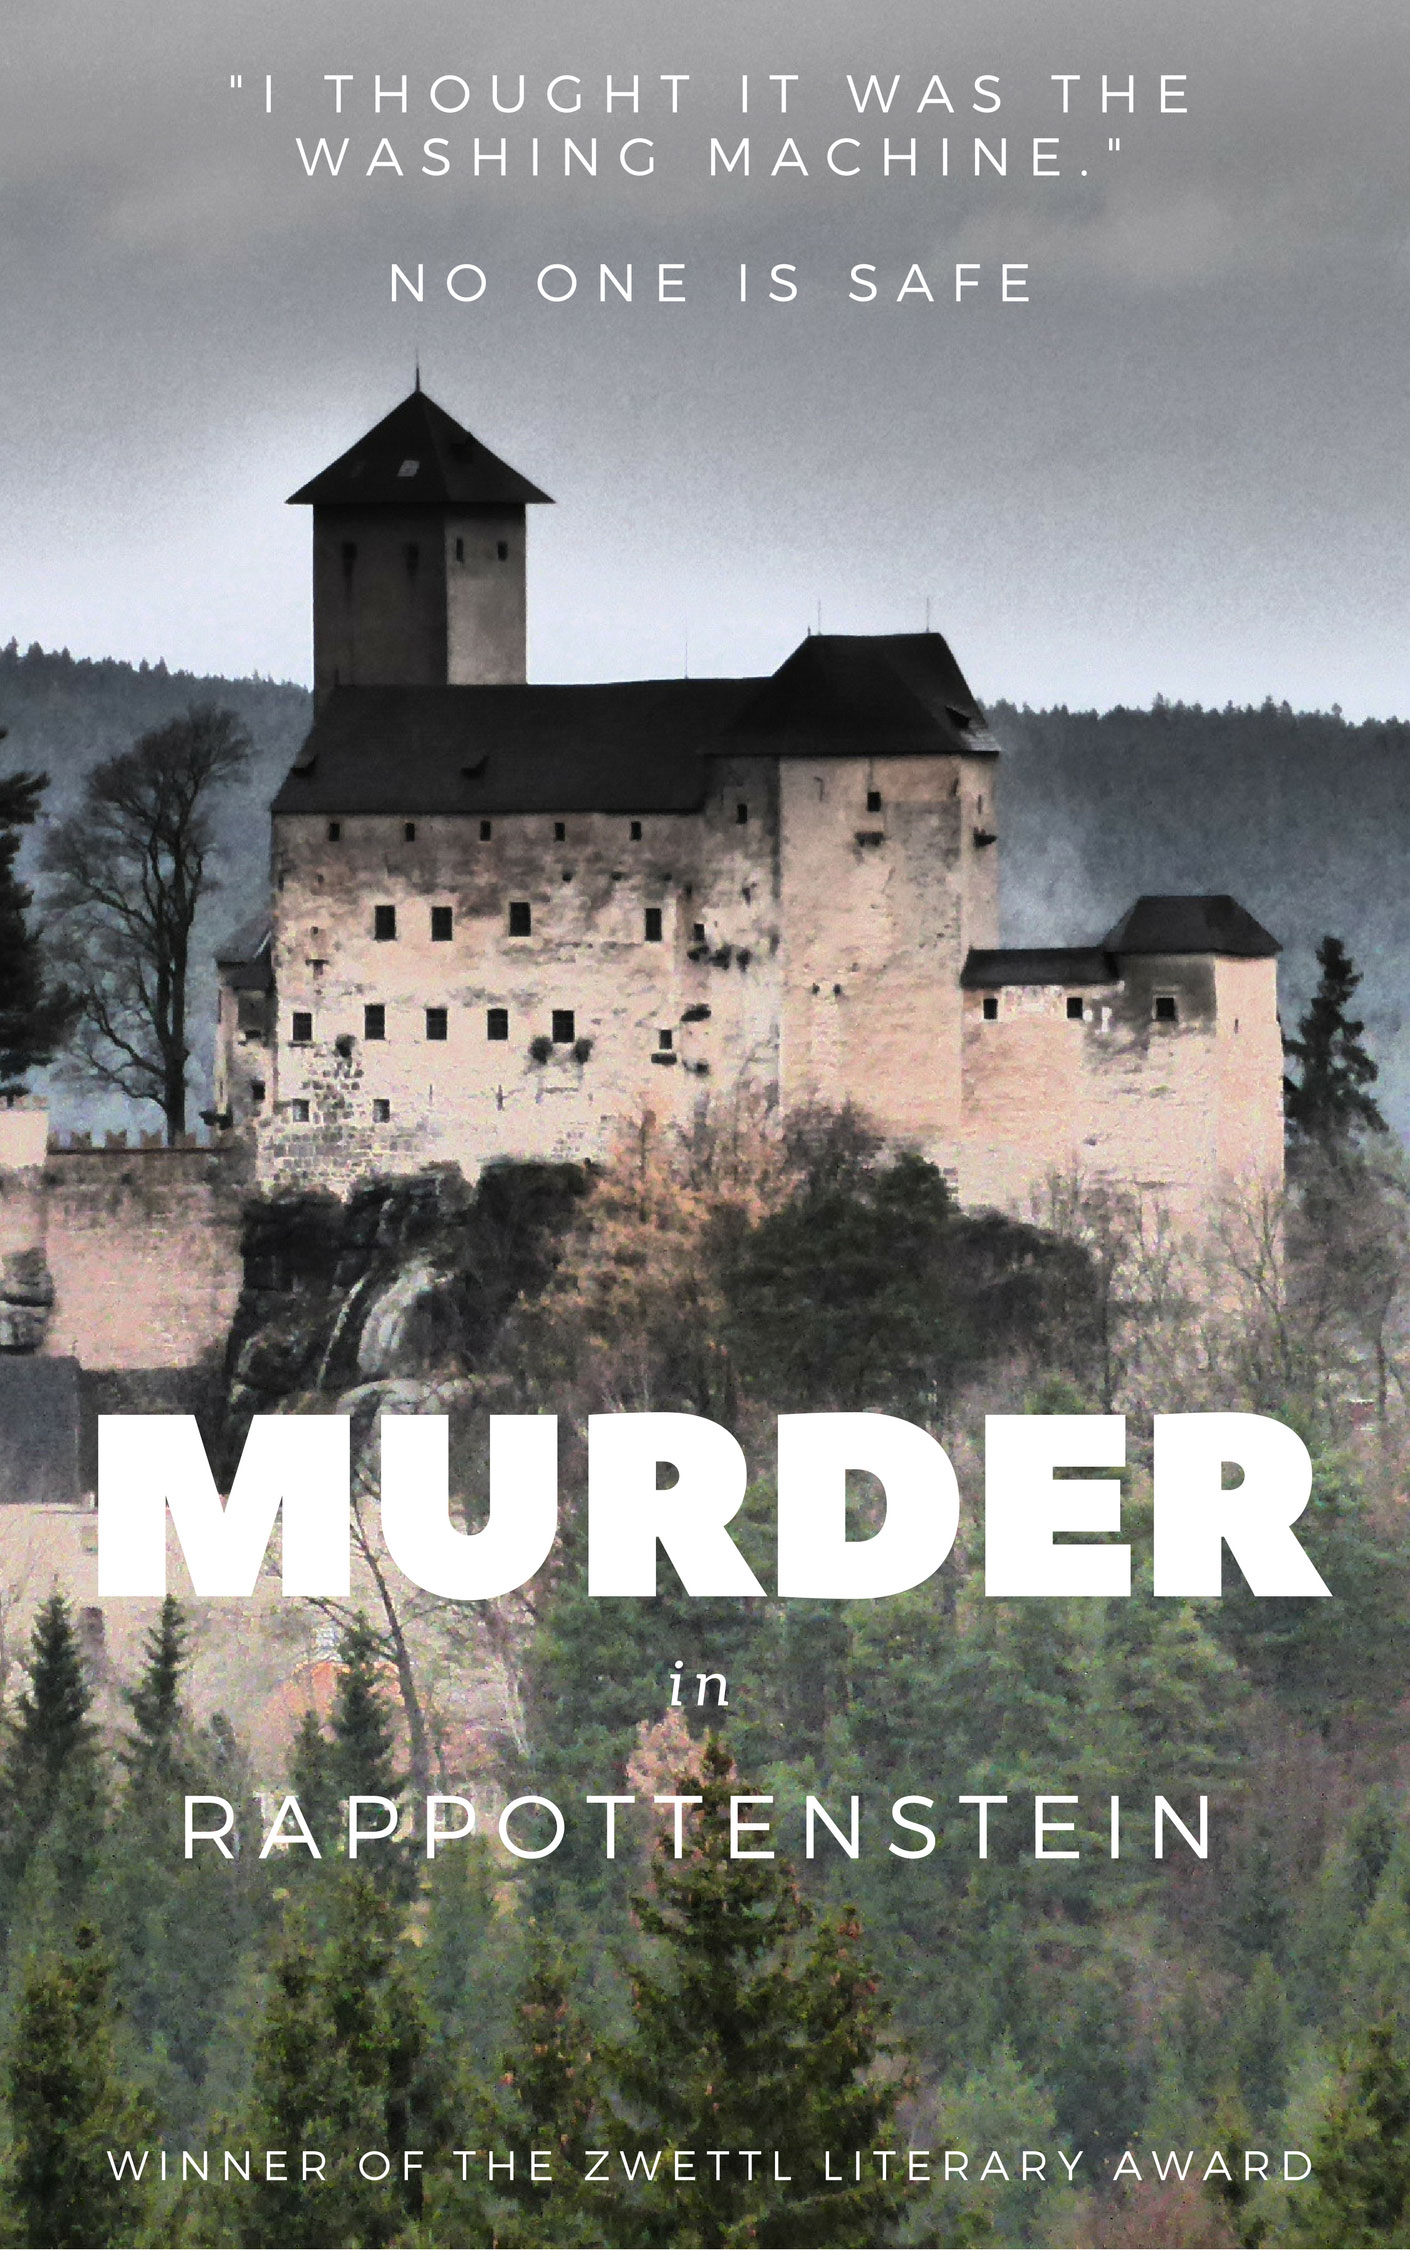 Murder in Rappottenstein. Spoiler Alert: it's not the washing machine.